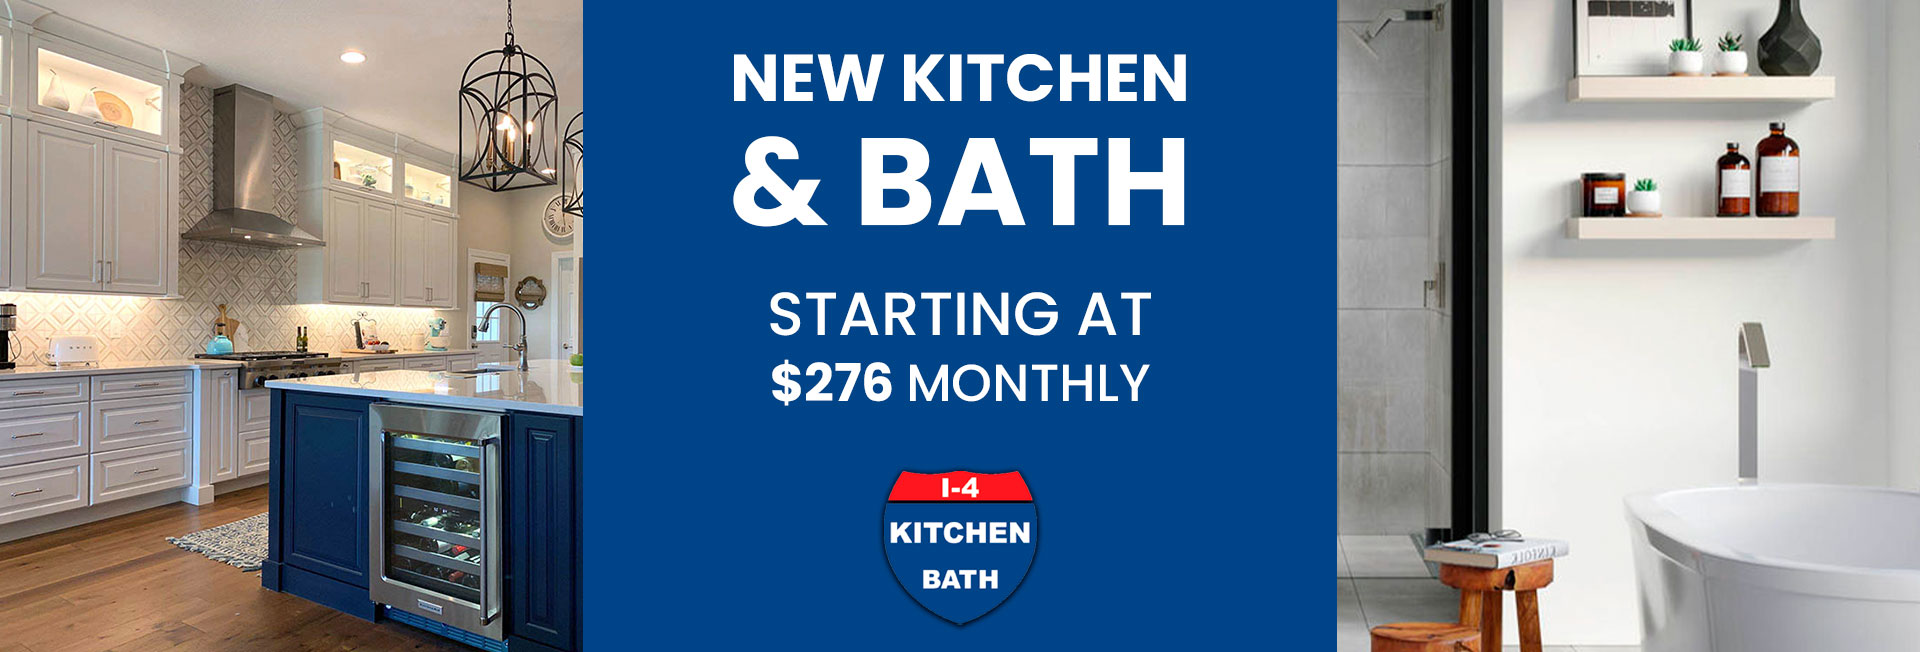 new kitchen & bath Starting at $276 monthly orlando